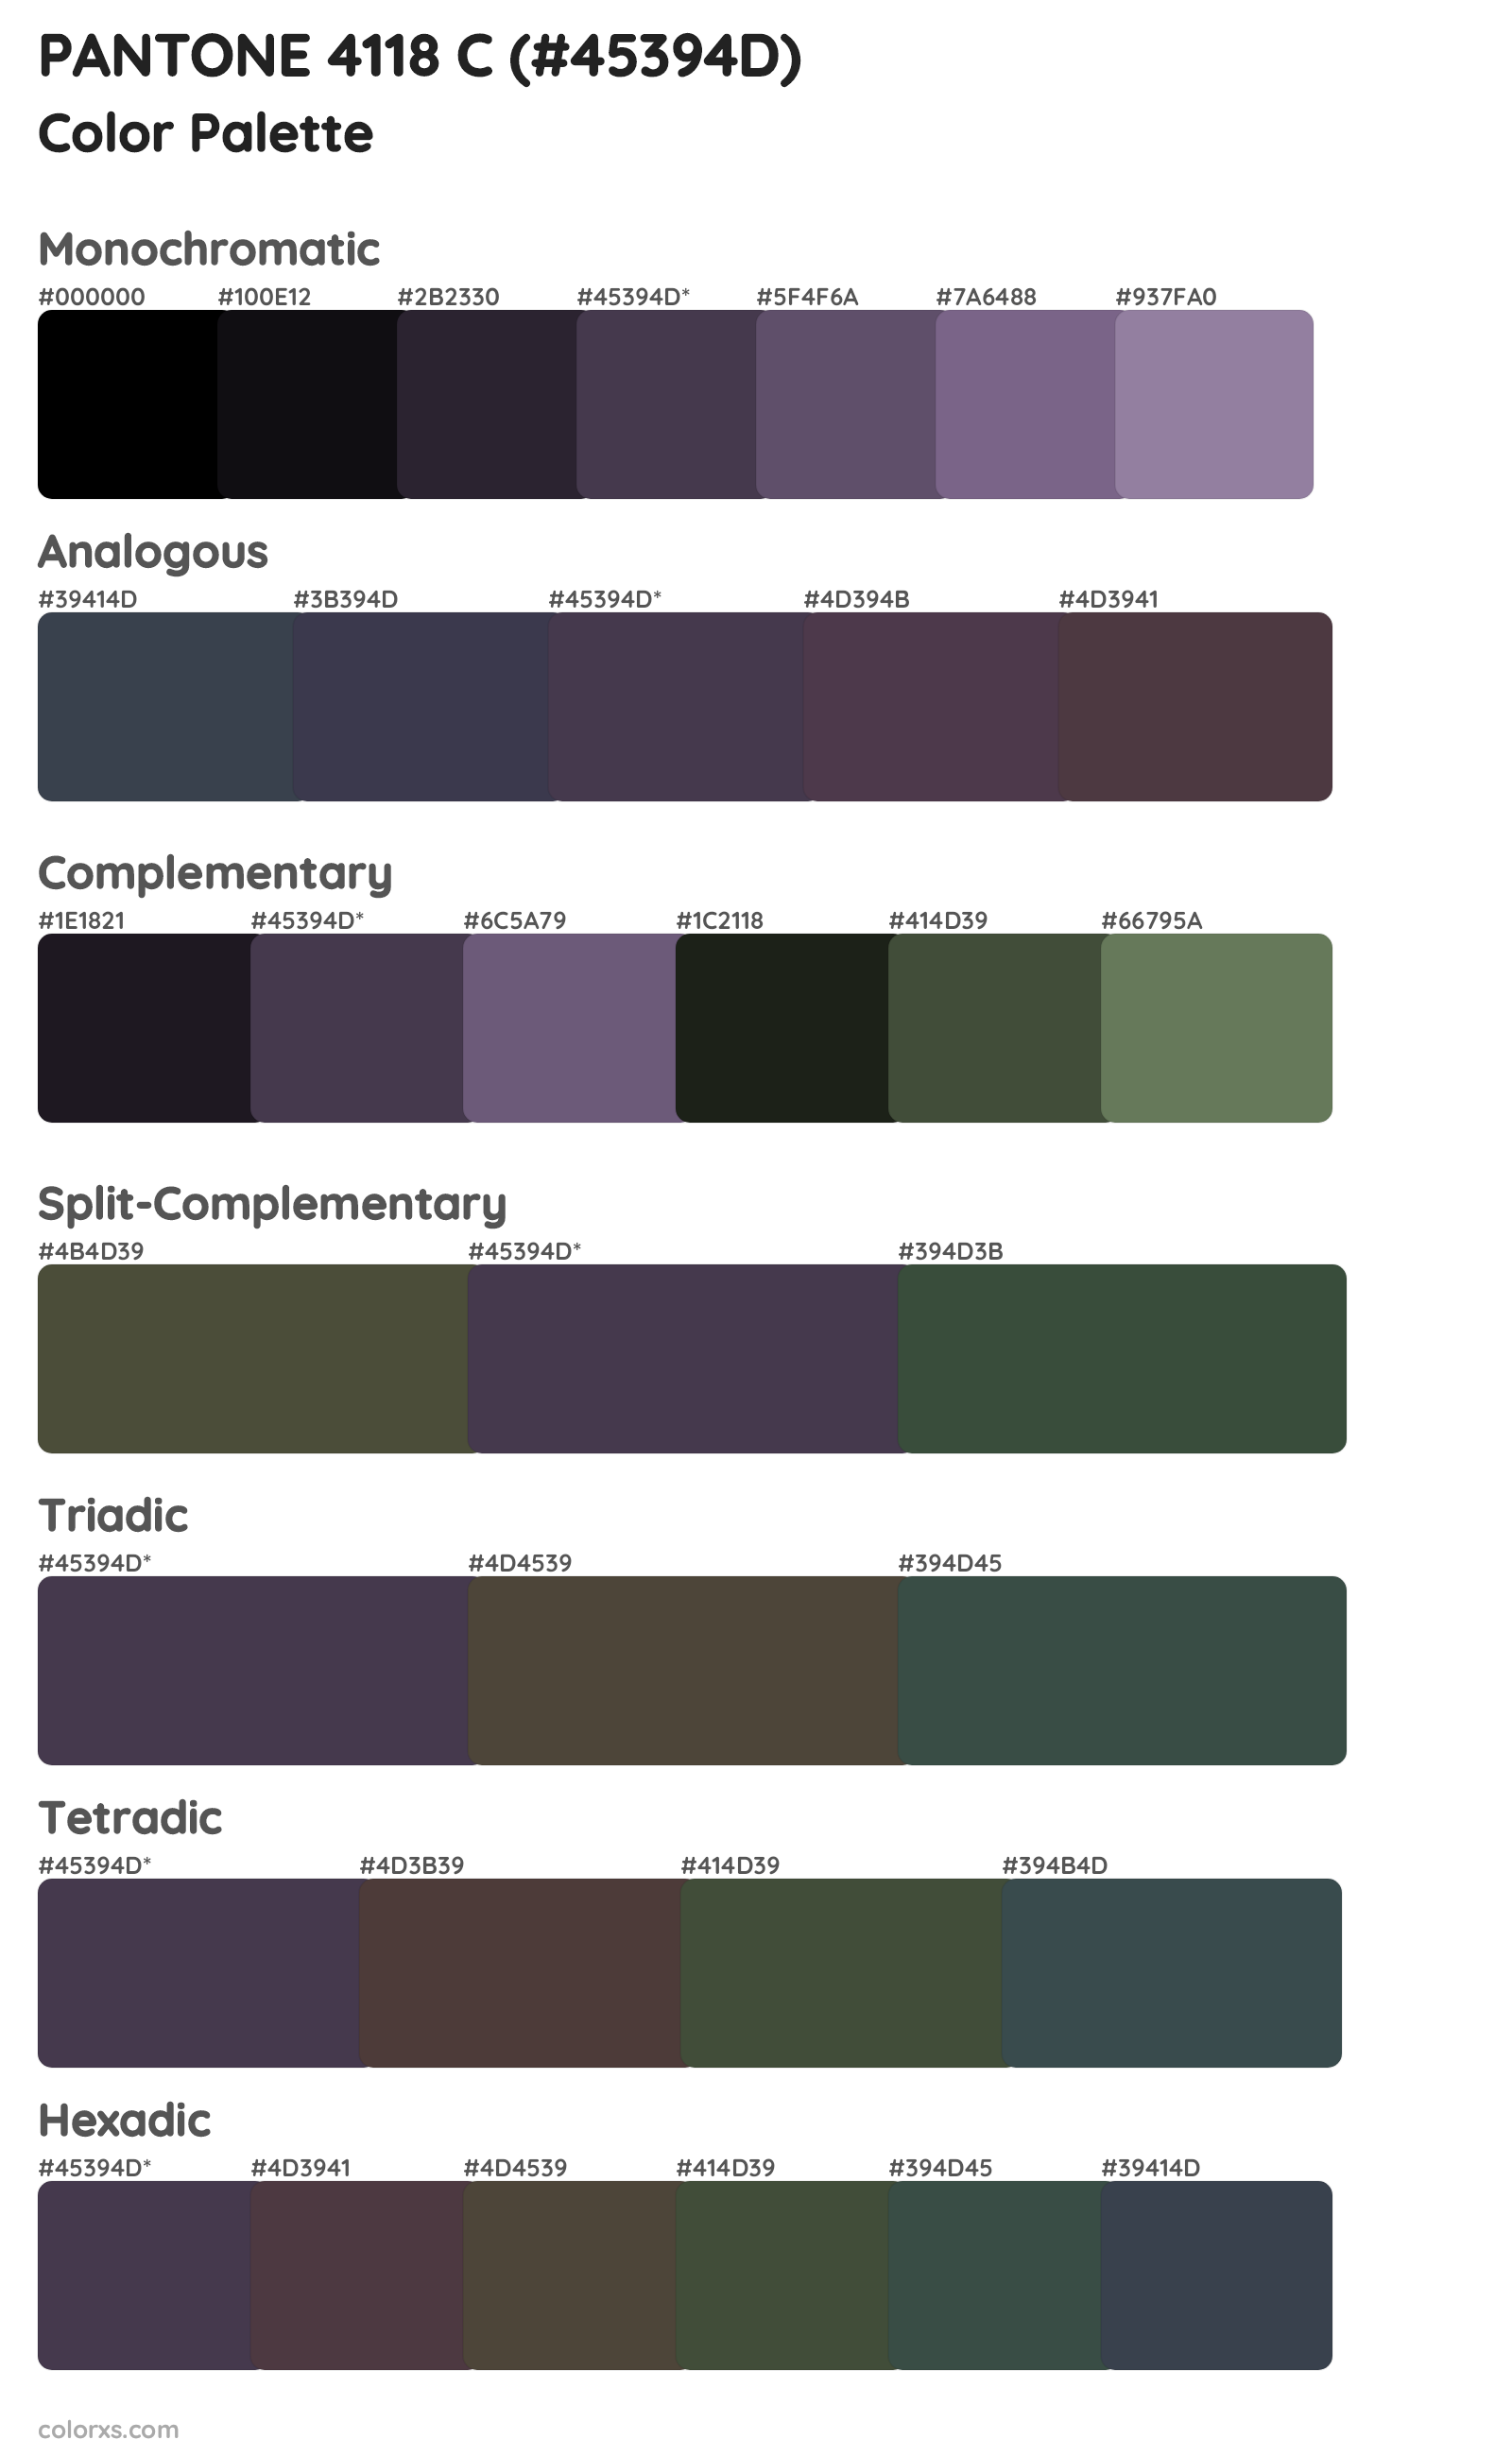 PANTONE 4118 C Color Scheme Palettes